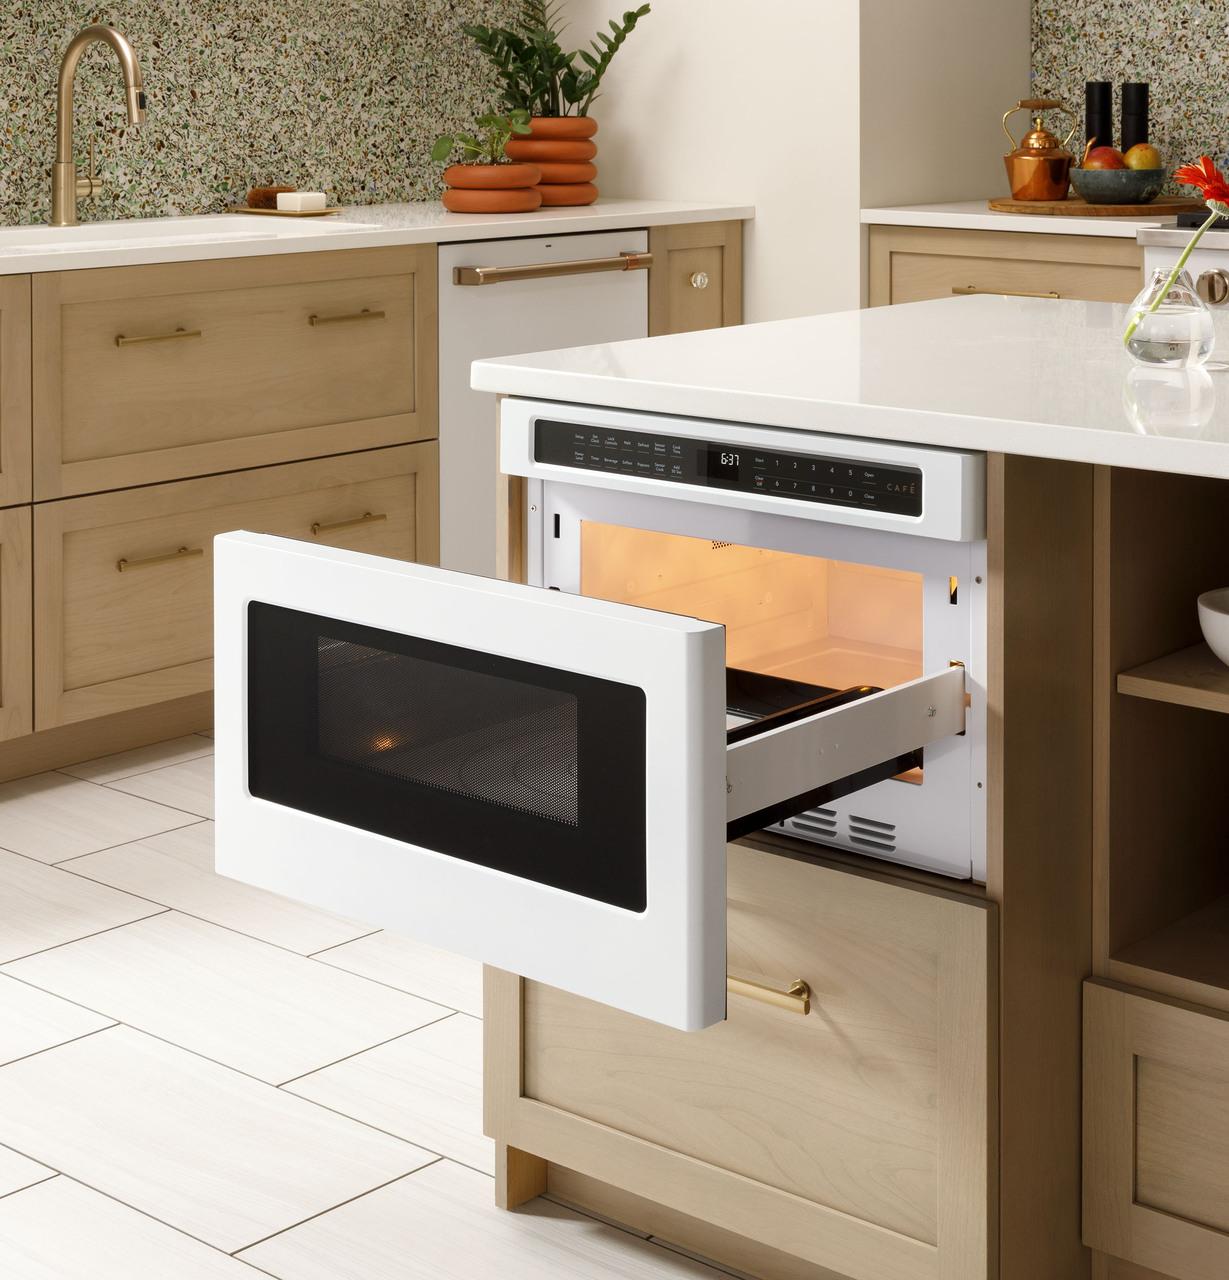 Cafe Caf(eback)™ Built-In Microwave Drawer Oven